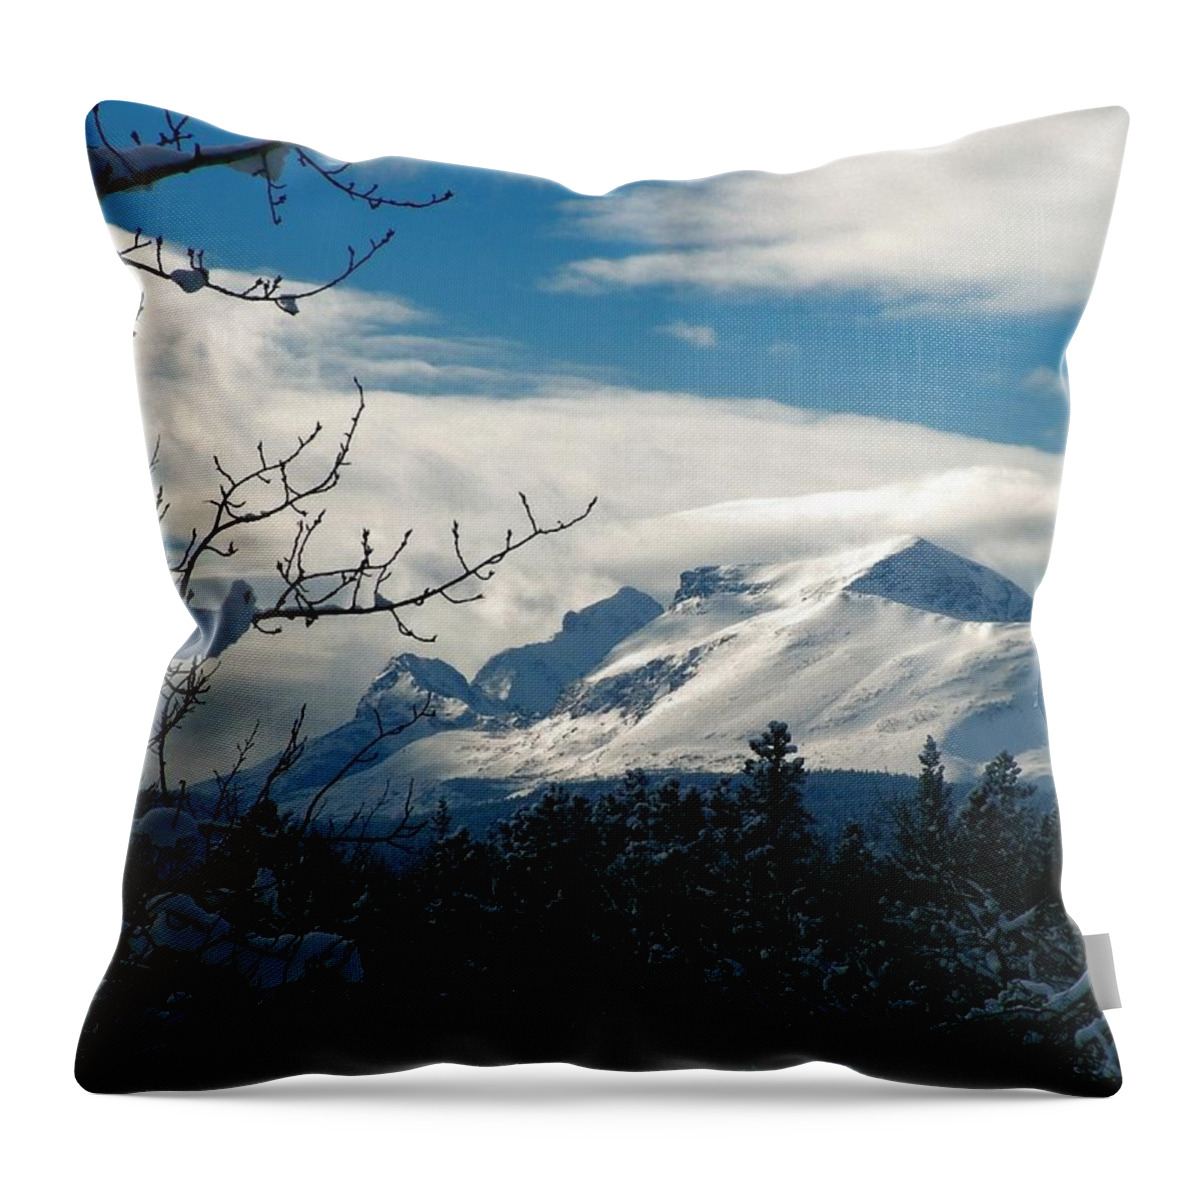 Calf Robe Mountain Throw Pillow featuring the photograph Calf Robe Mountain in Winter by Tracey Vivar